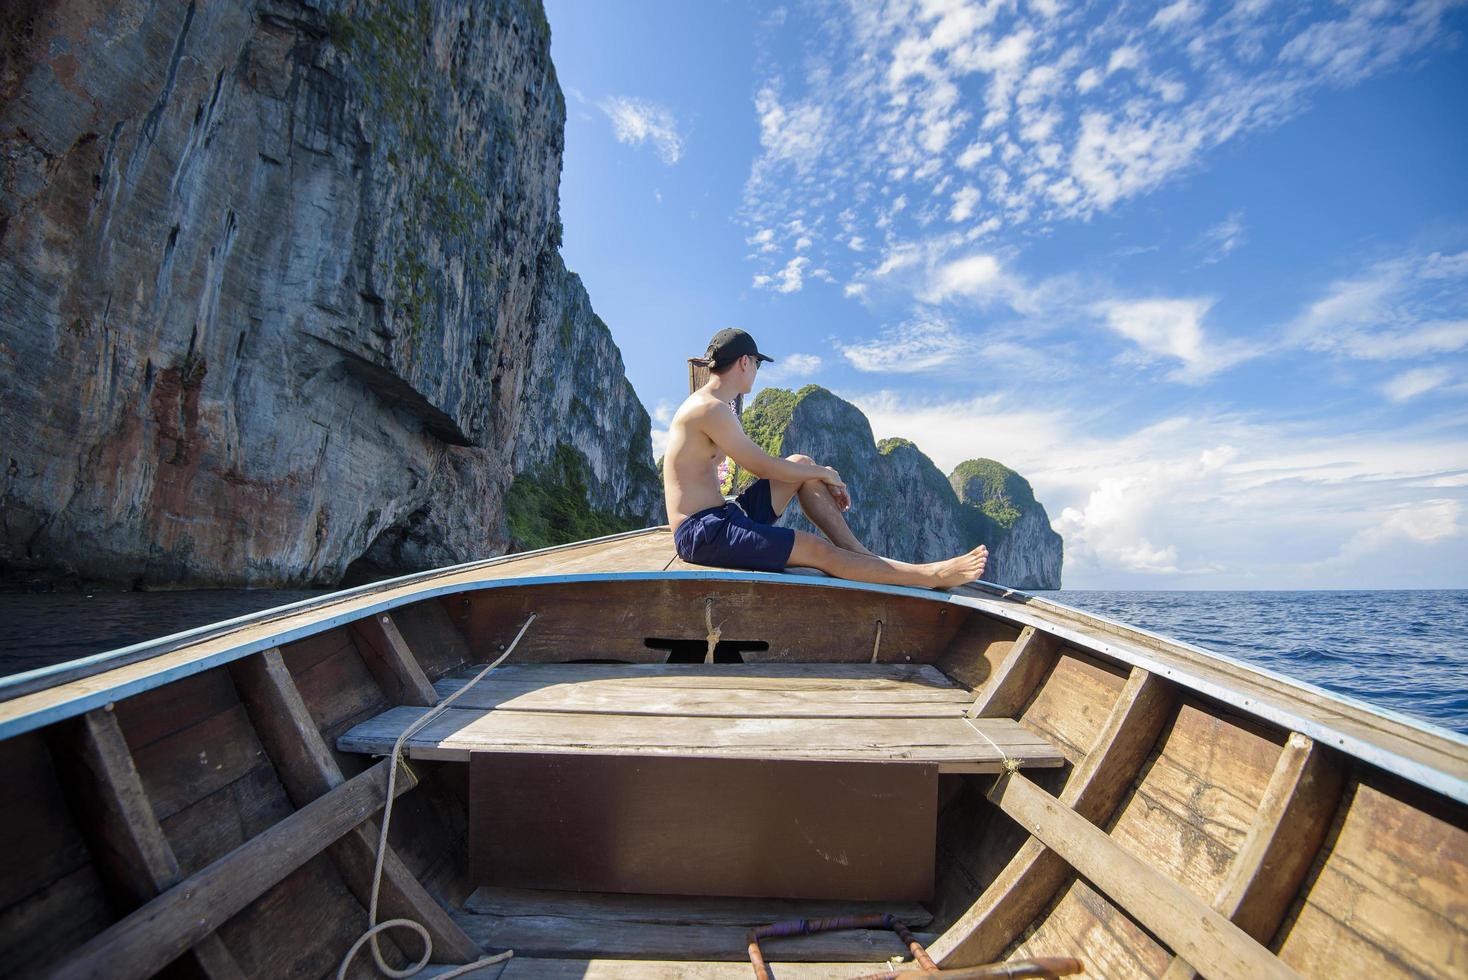 weergave van man in zwembroek genietend op Thaise traditionele longtailboot over prachtige bergen en oceaan, phi phi-eilanden, thailand foto